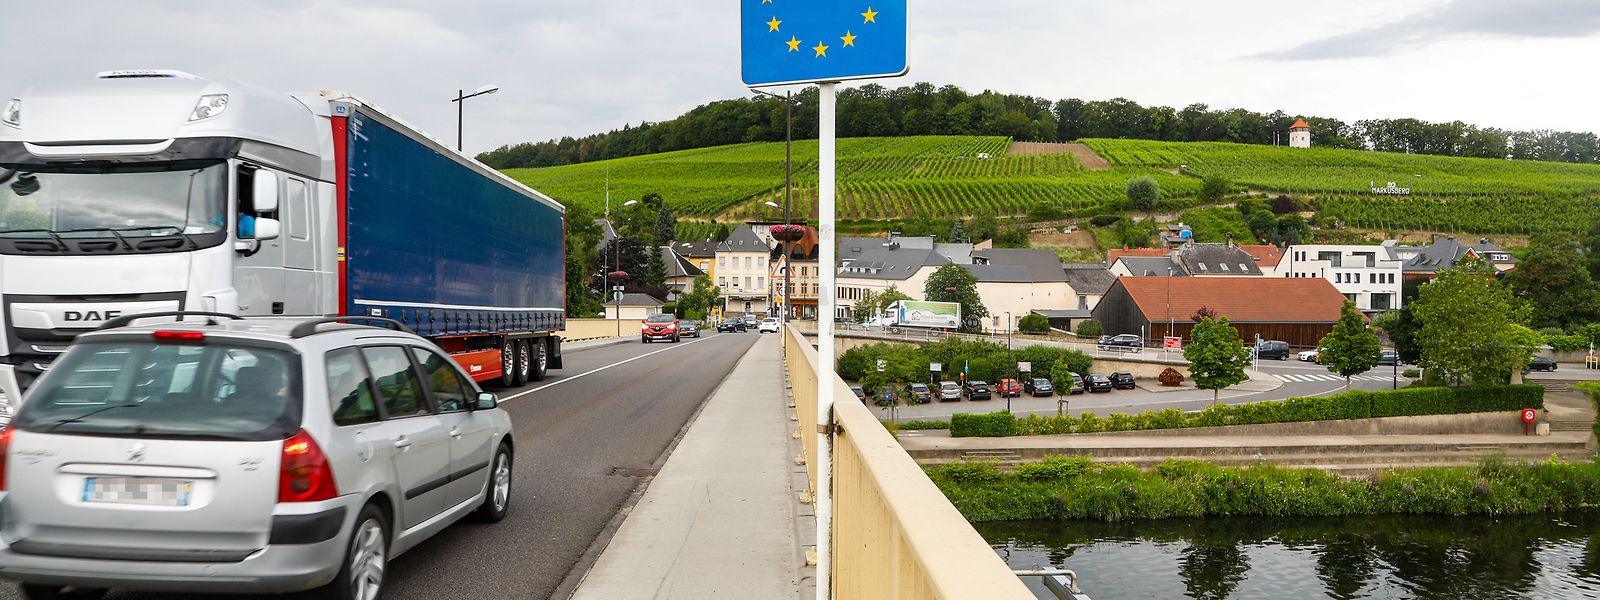 Seit dem 16. Mai ist die deutsch-luxemburgische Grenze wieder offen.